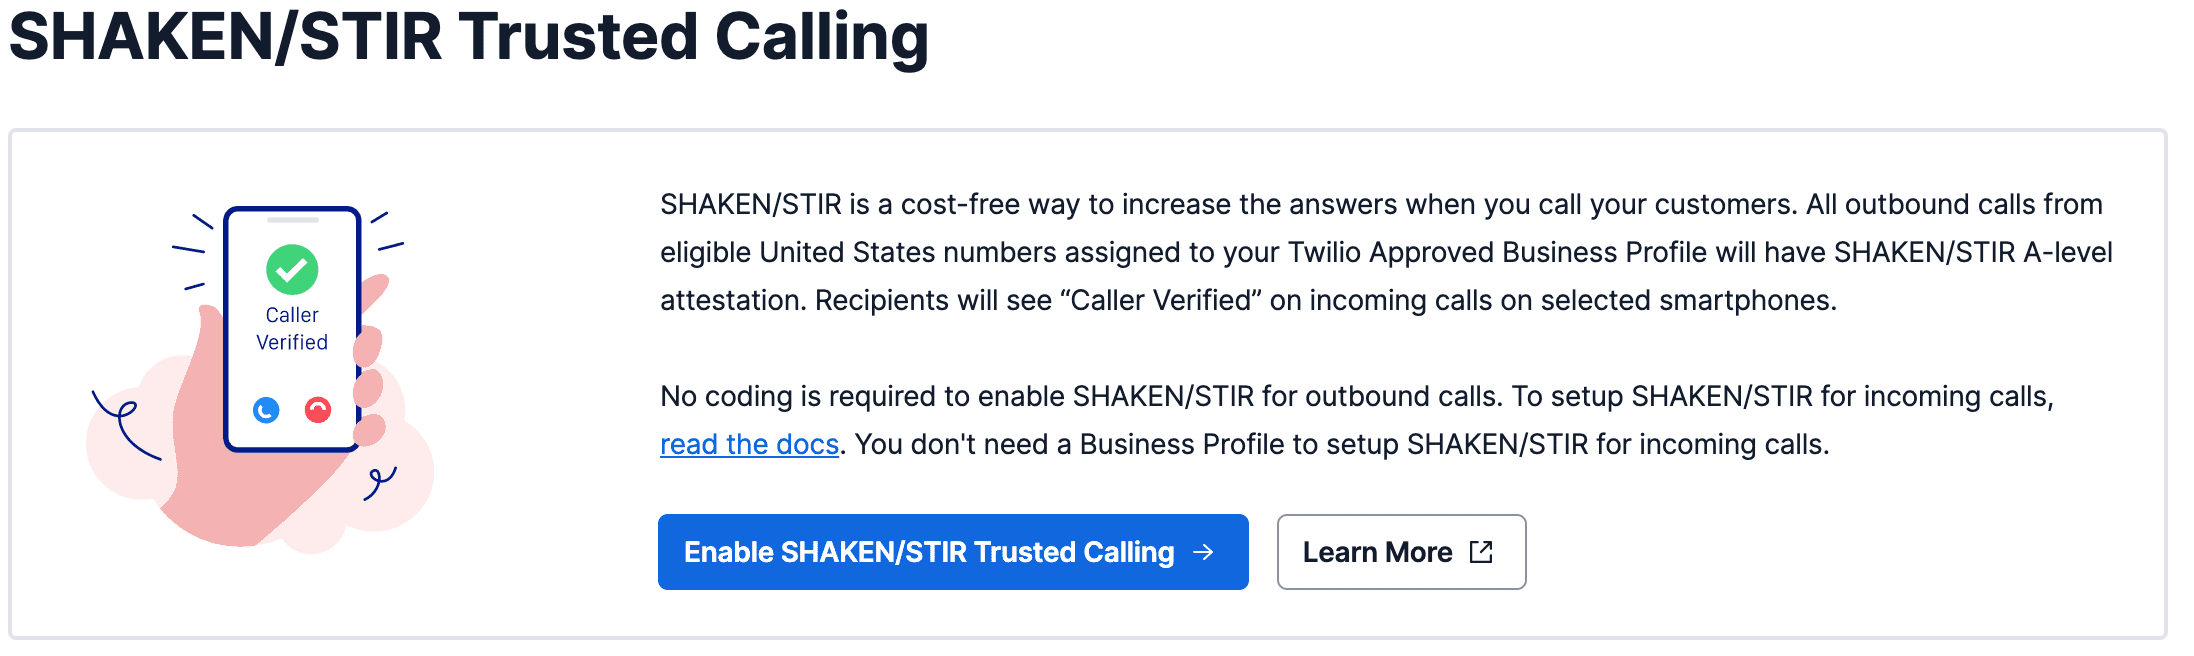 SHAKEN/STIR Trusted Calling